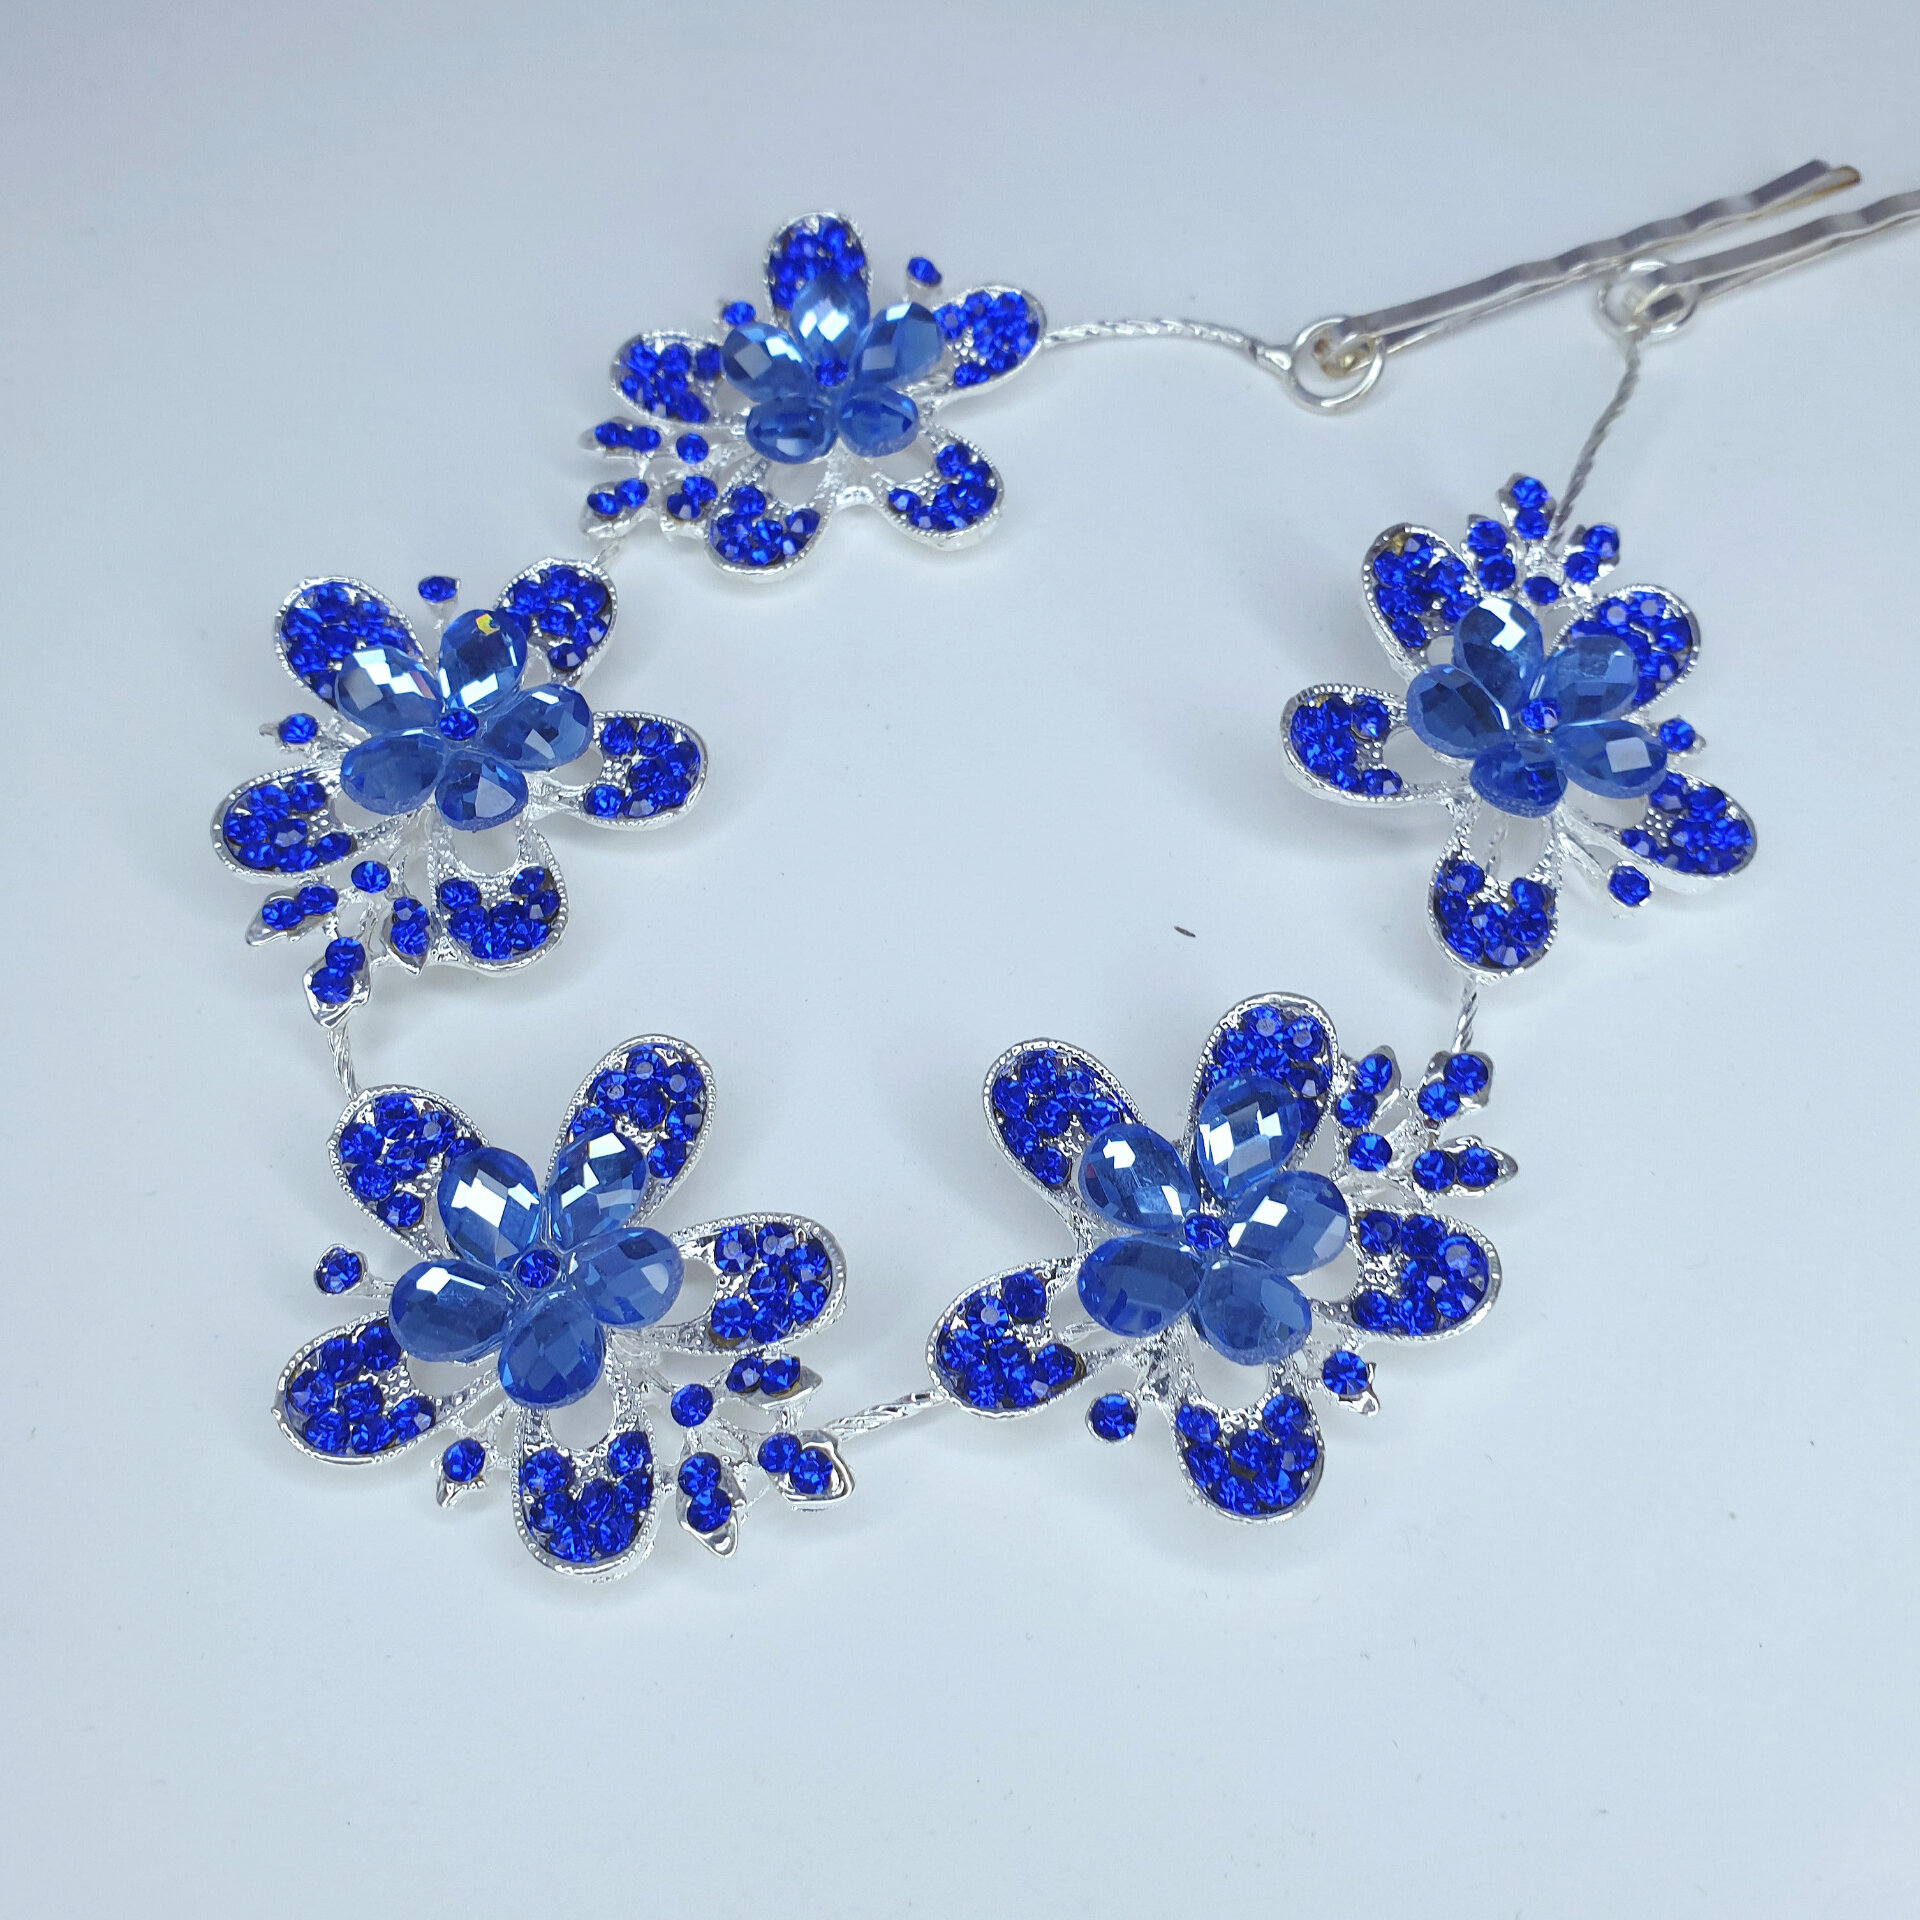 Диадема мягкая из синих кристаллов на праздник /синее украшение из страз на волосы /подарок